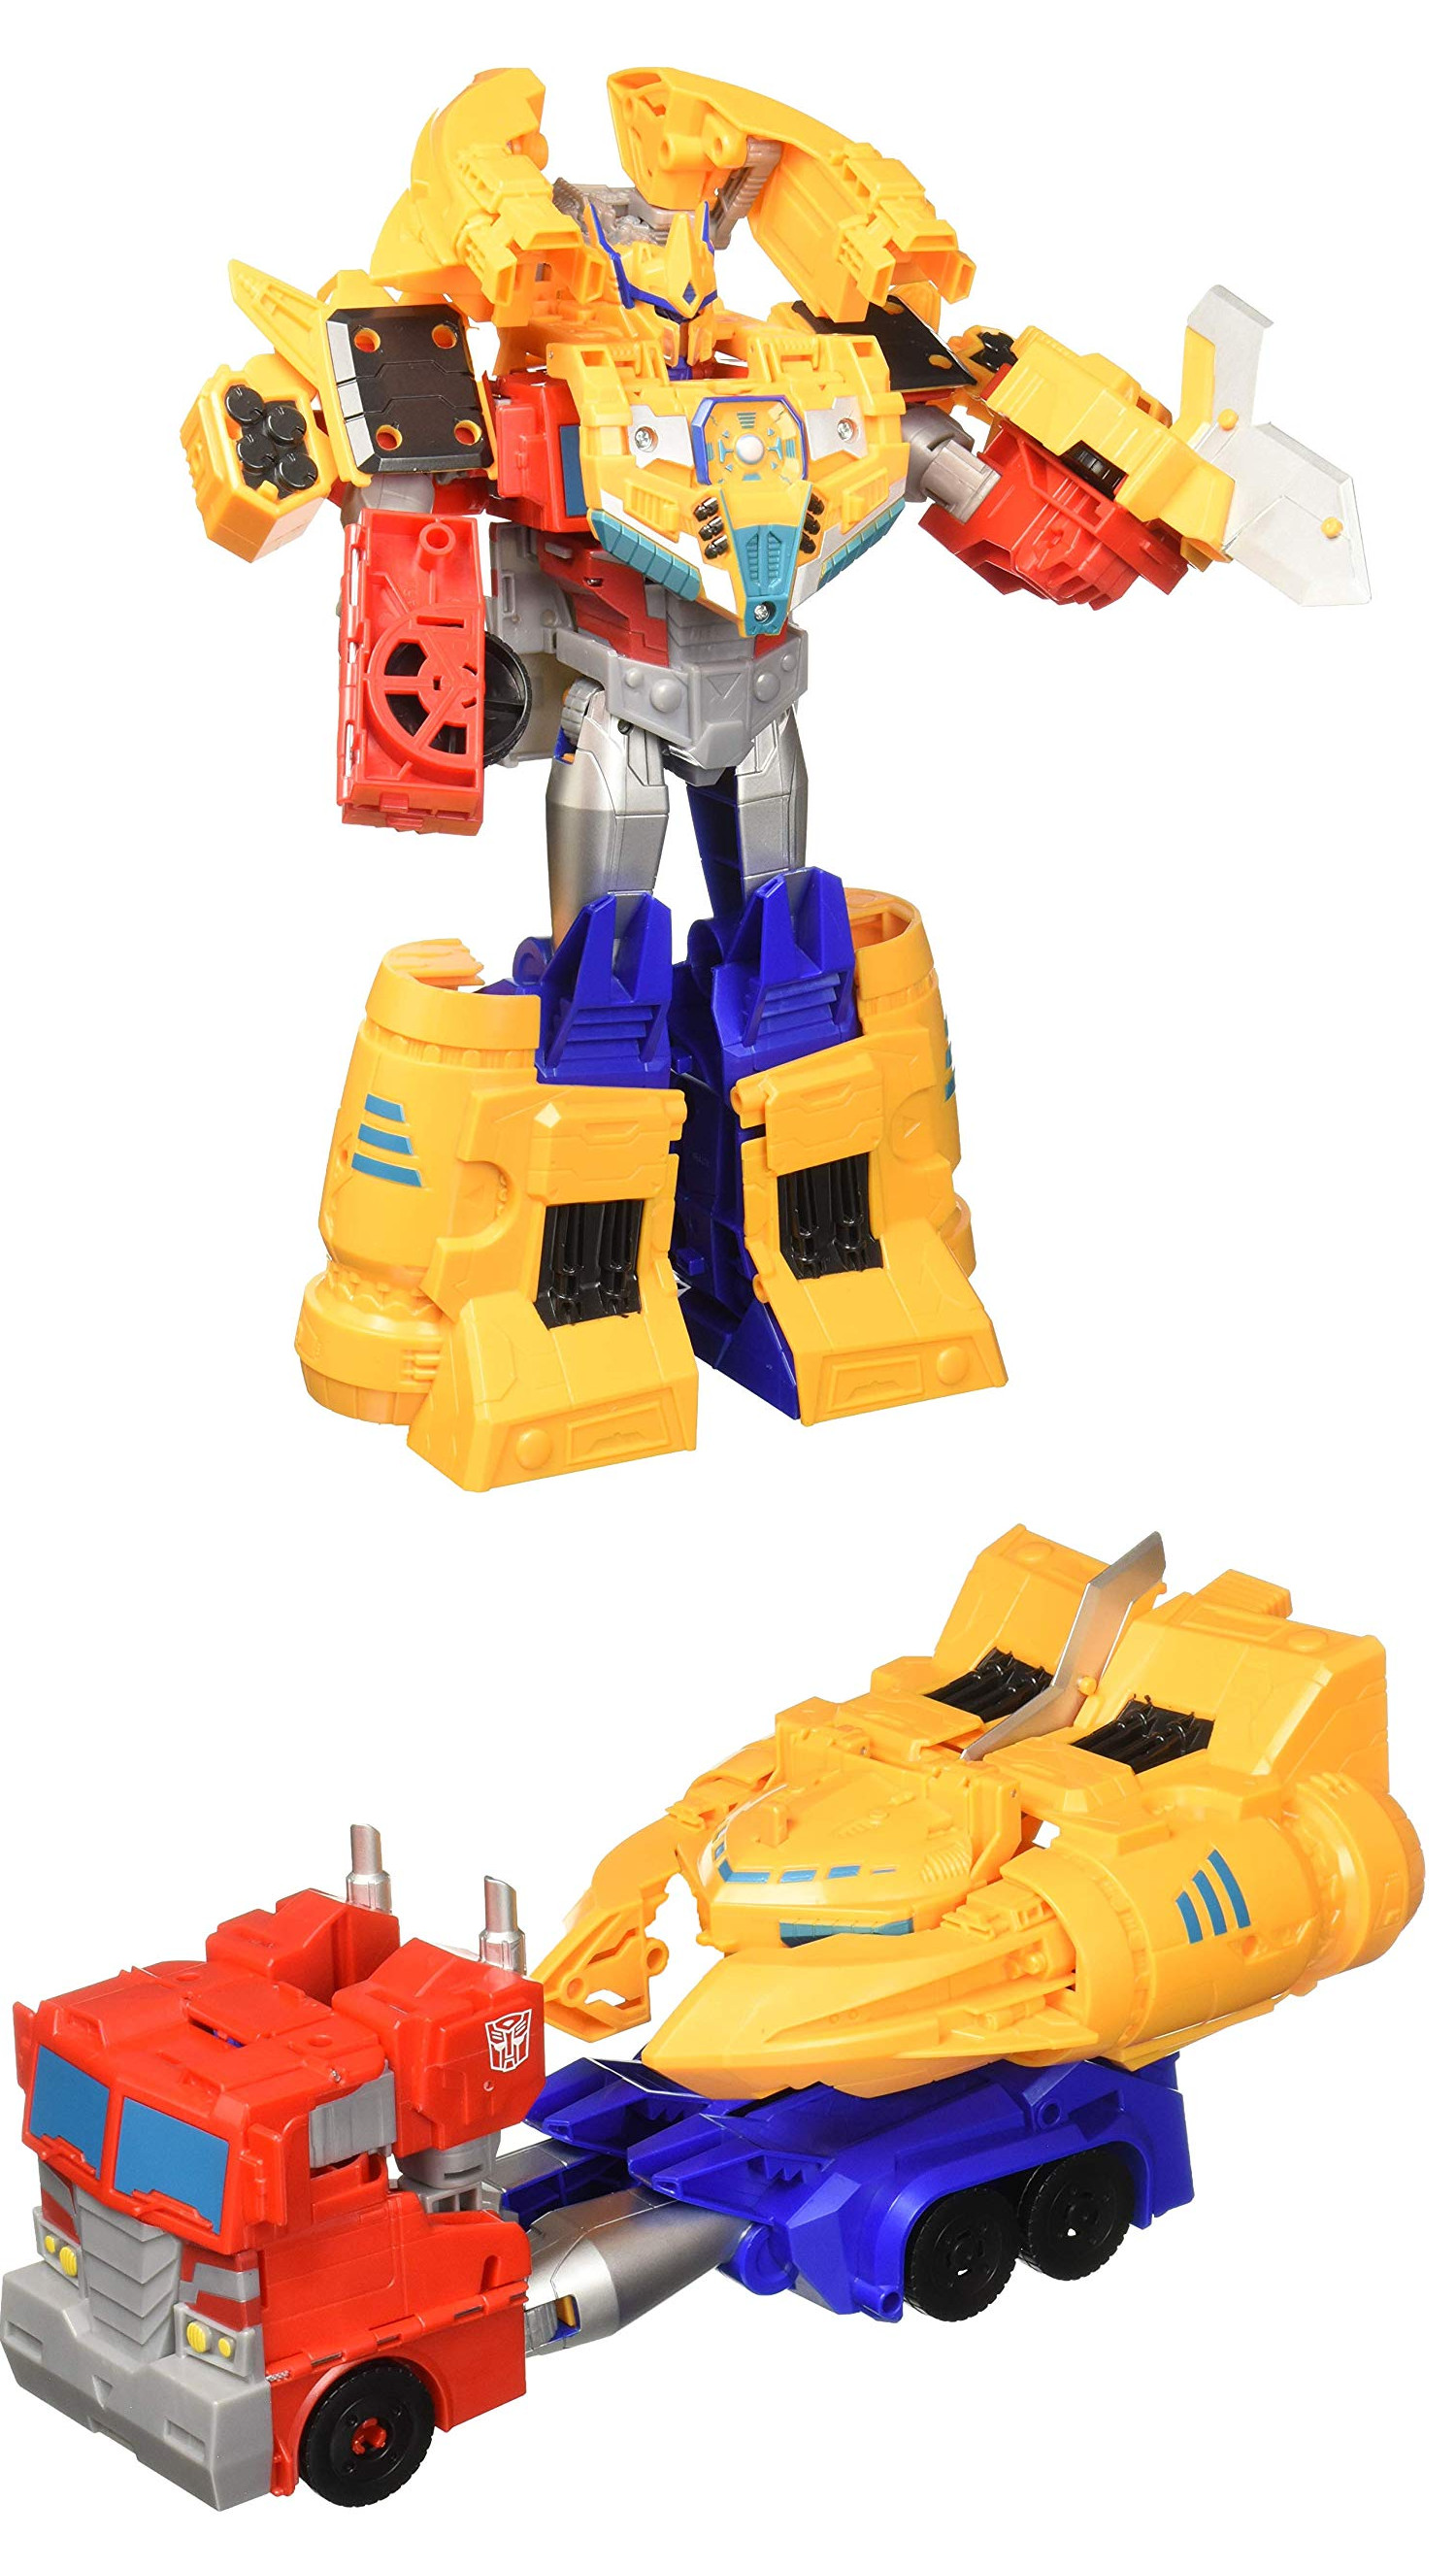 Трансформеры: Кибервселенная Элит Оптимус Прайм (Transformers: Cyberverse Elite Class Ark Power Optimus Prime Action Figure)